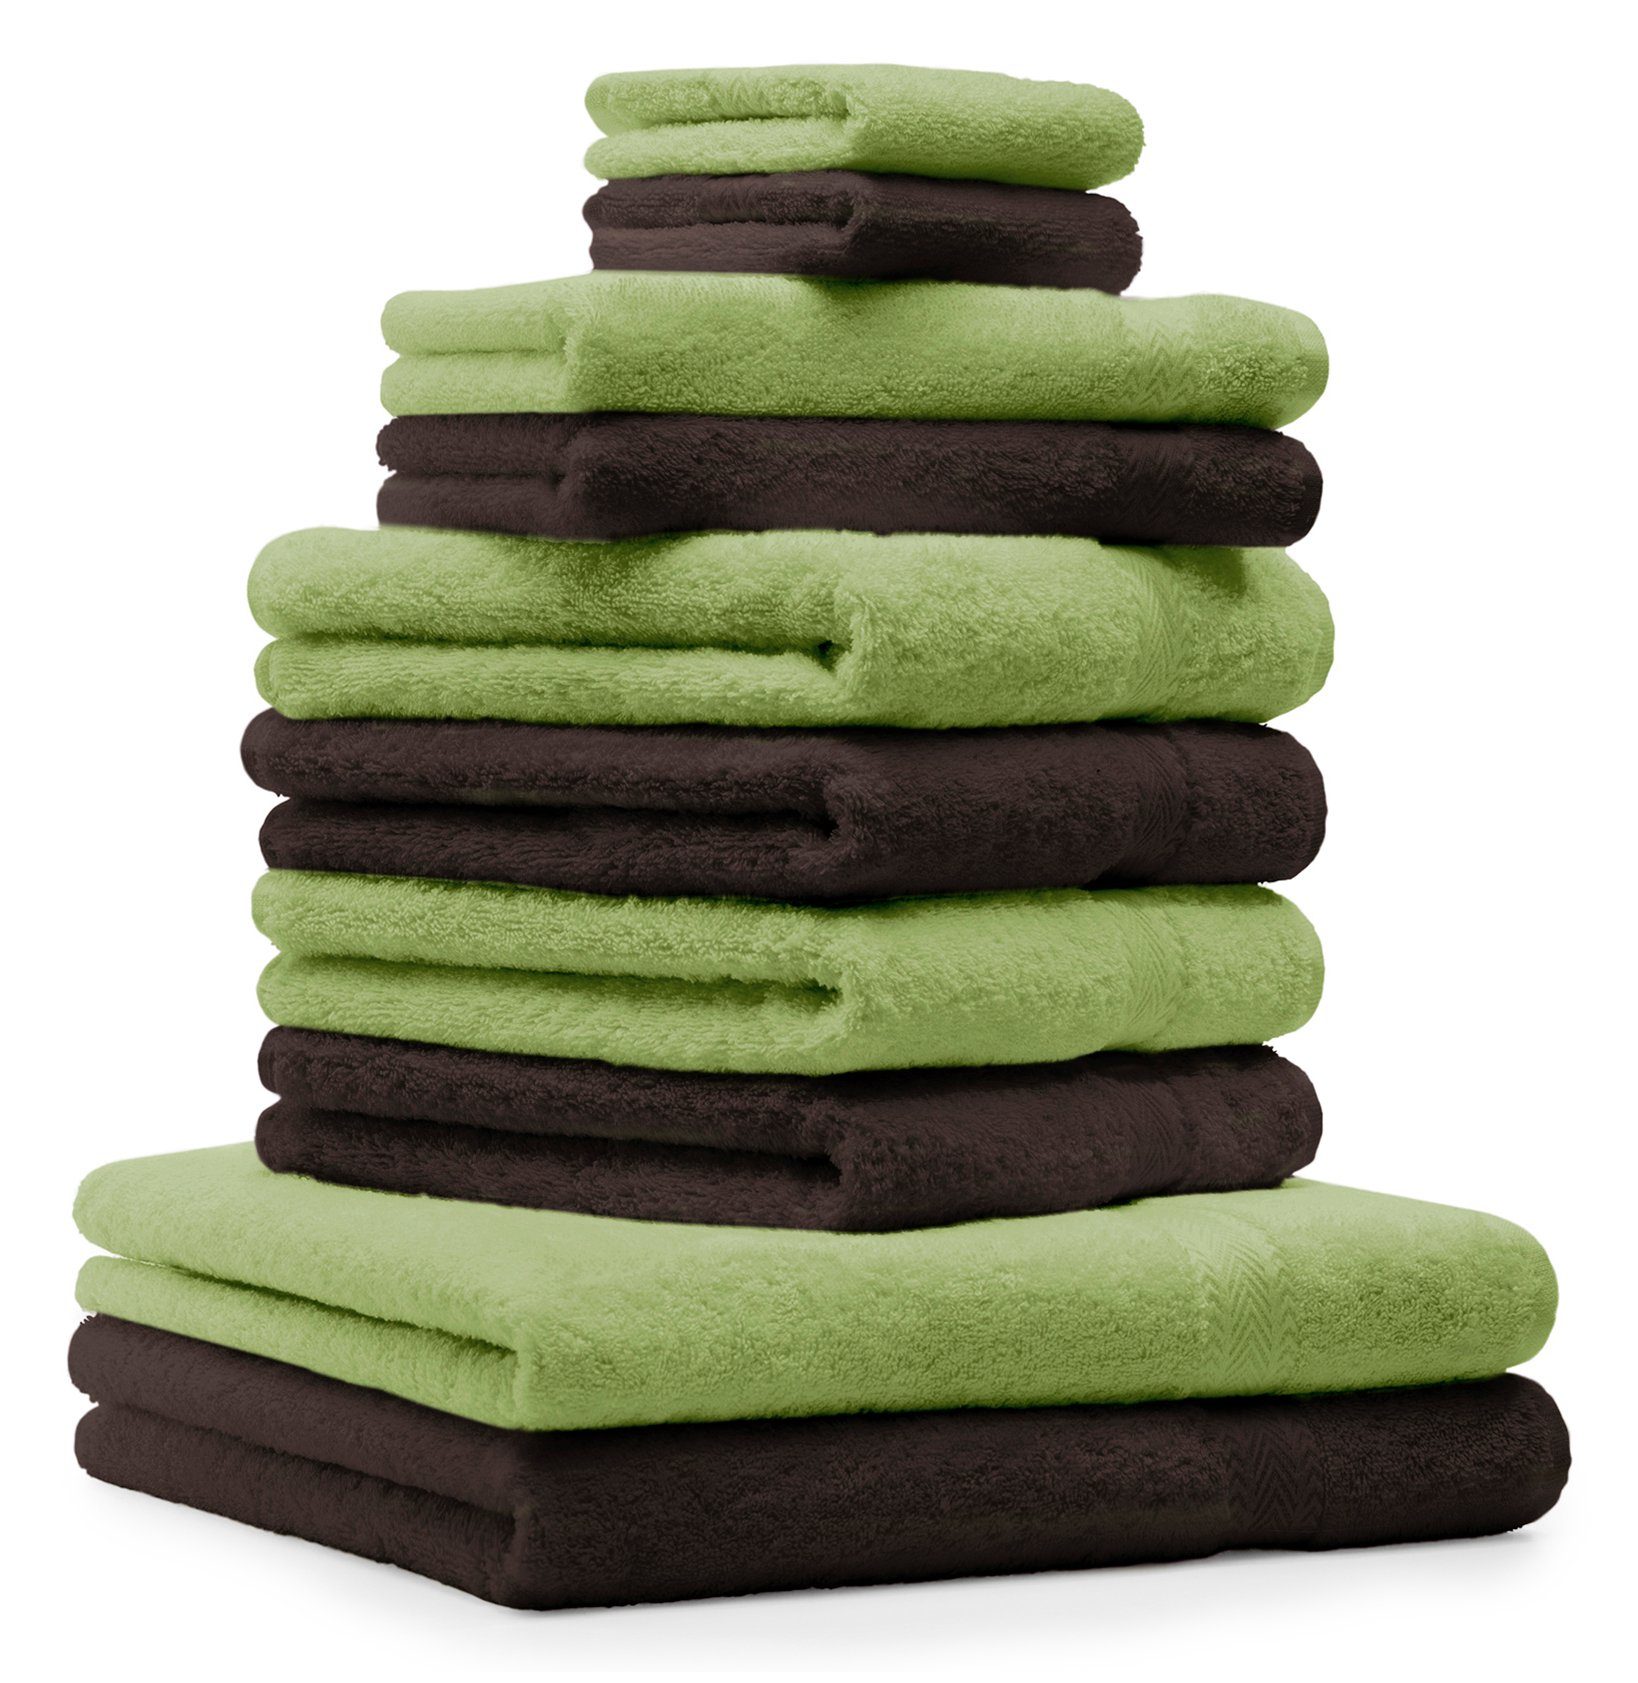 Betz Handtuch Set 10-TLG. Handtücher-Set Classic Farbe apfelgrün und dunkelbraun, 100% Baumwolle